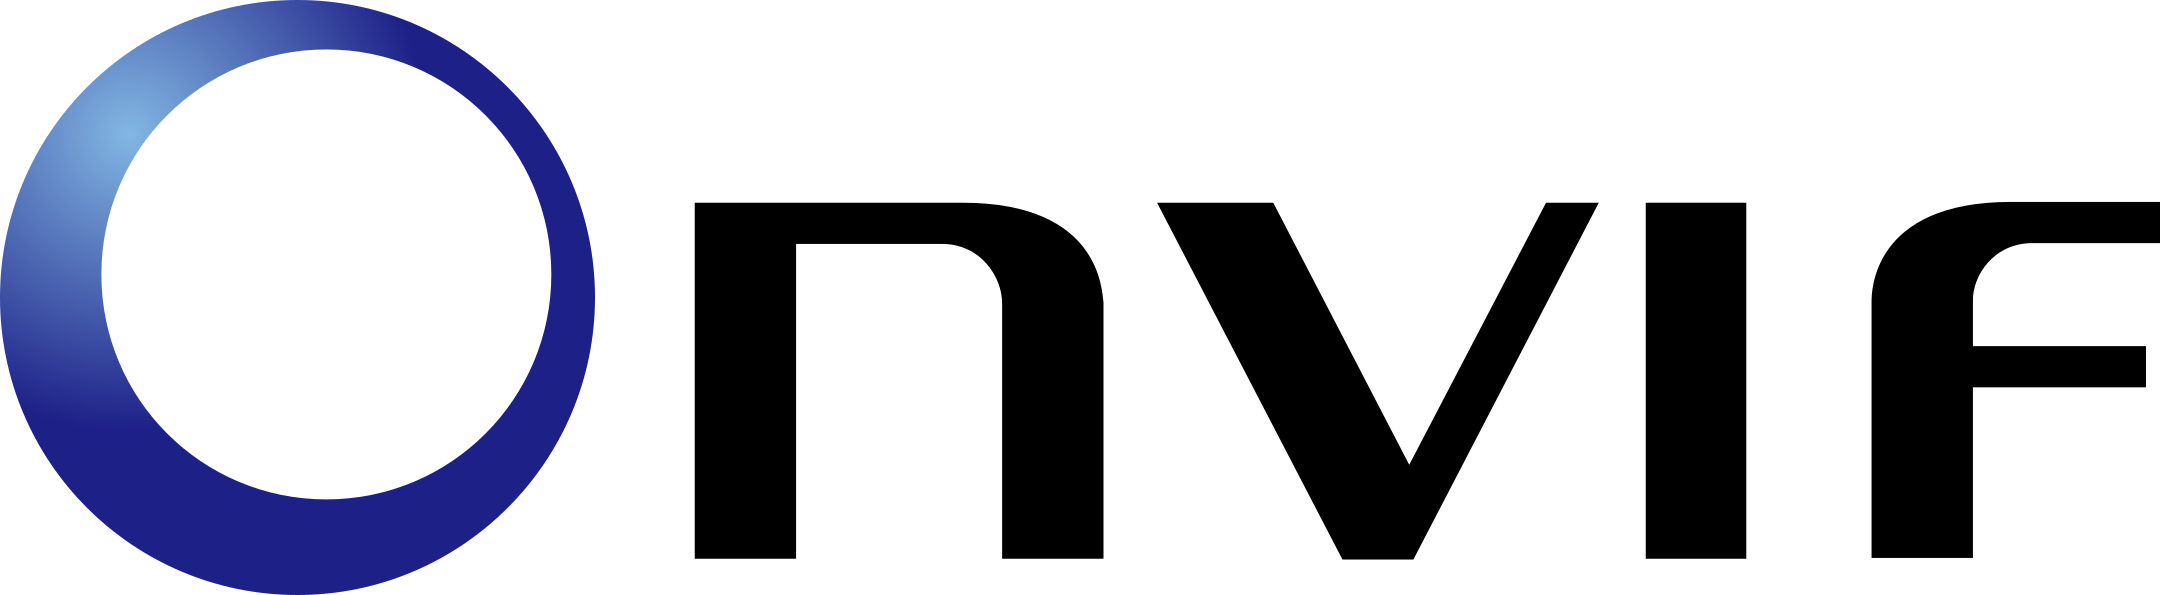 onvif logo 1 - Onvif Logo